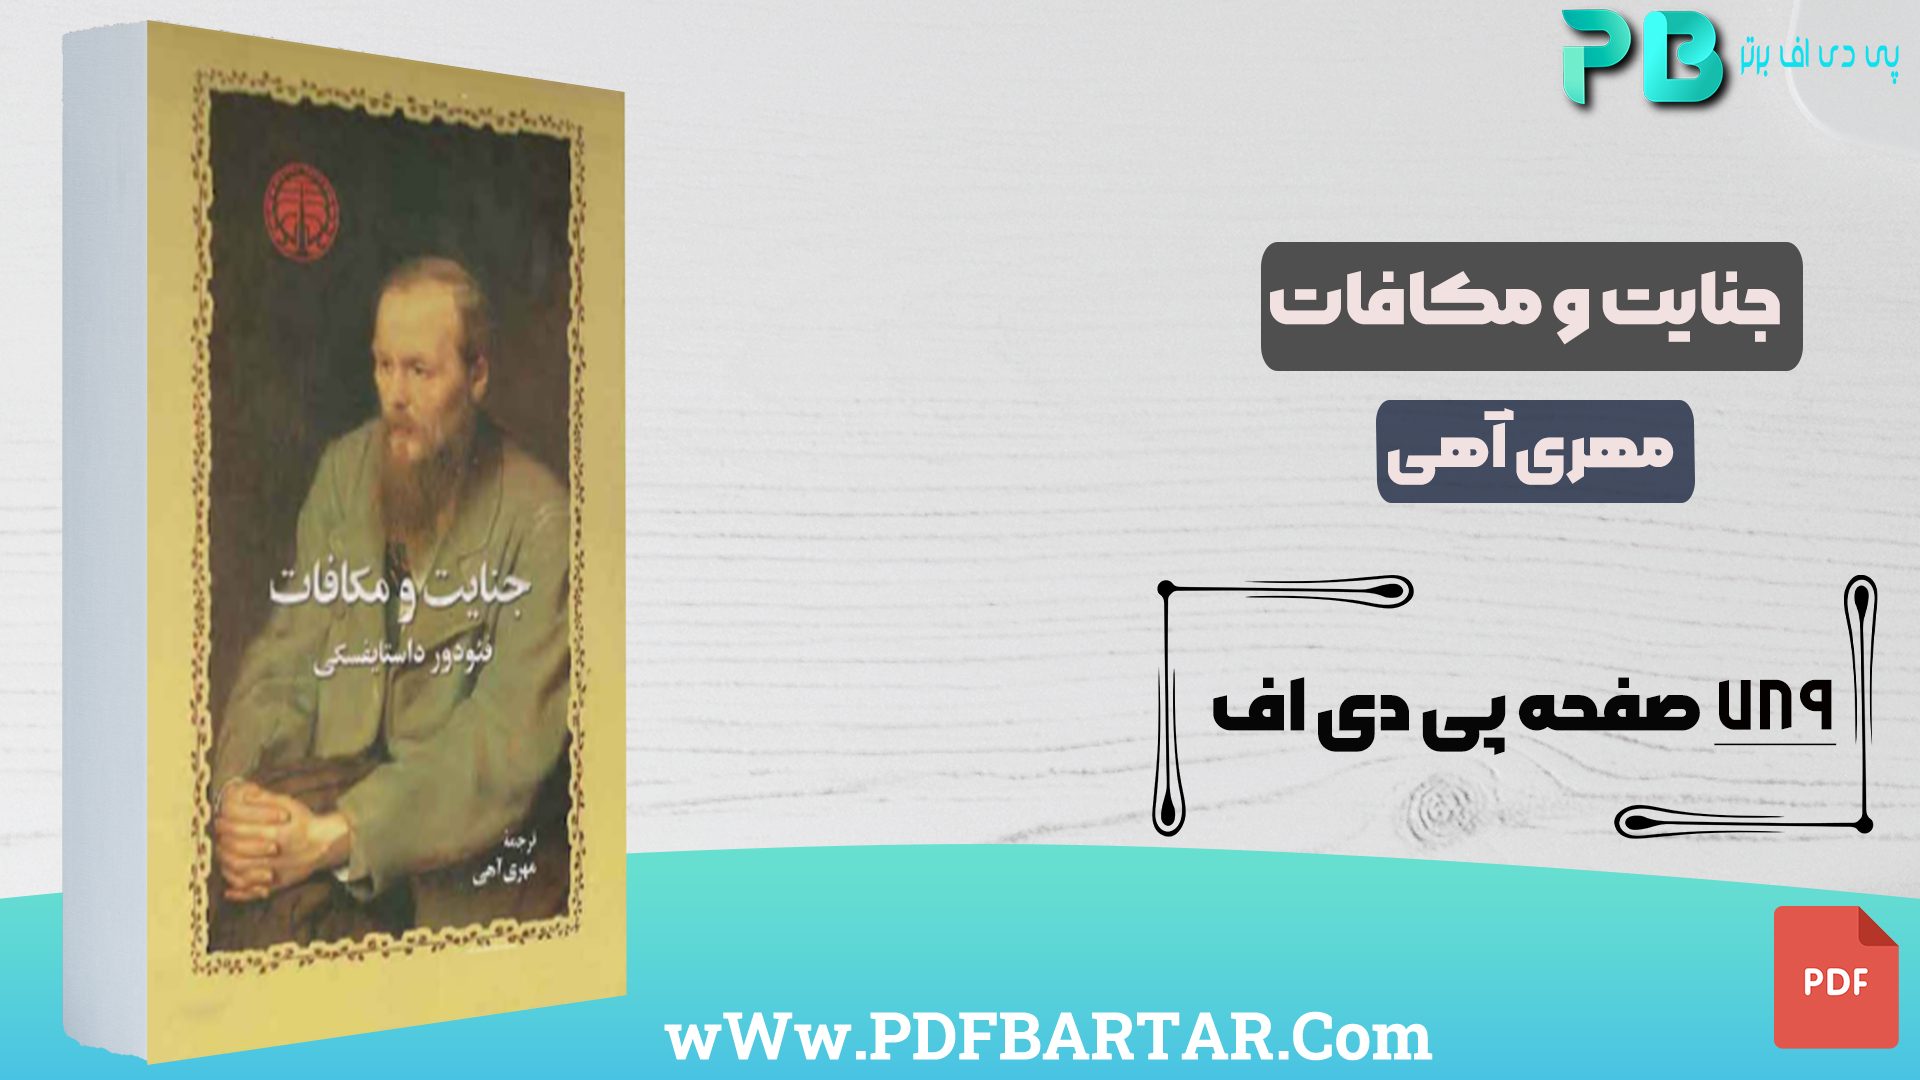 دانلود پی دی اف کتاب جنایت و مکافات مهری آهی PDF - پی دی اف برتر